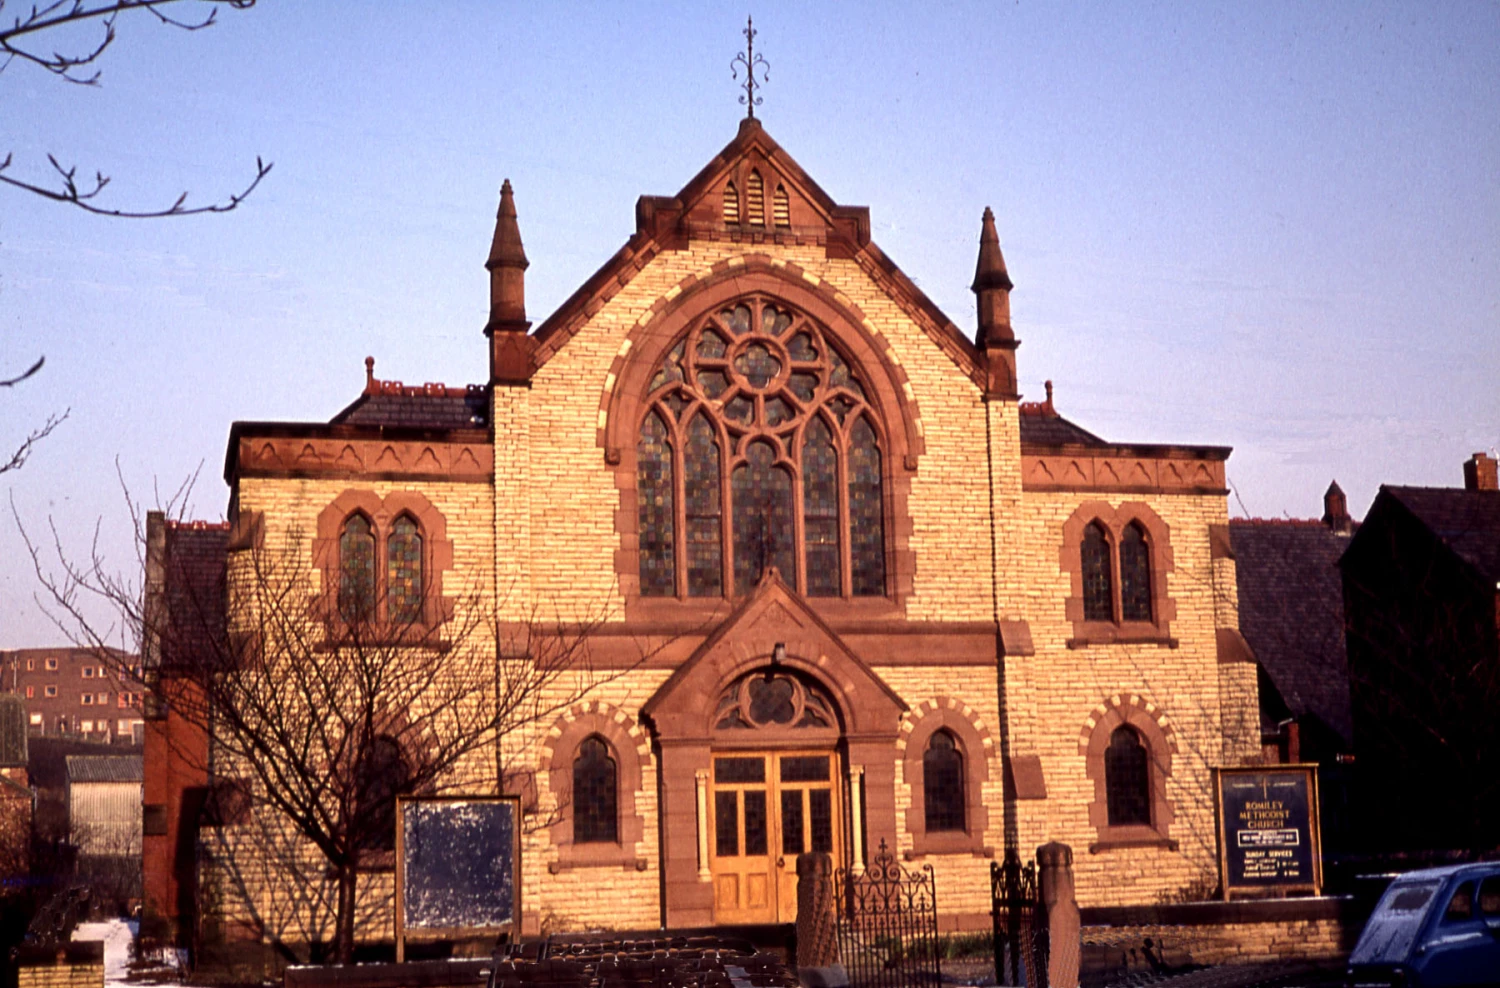 the 1903 church